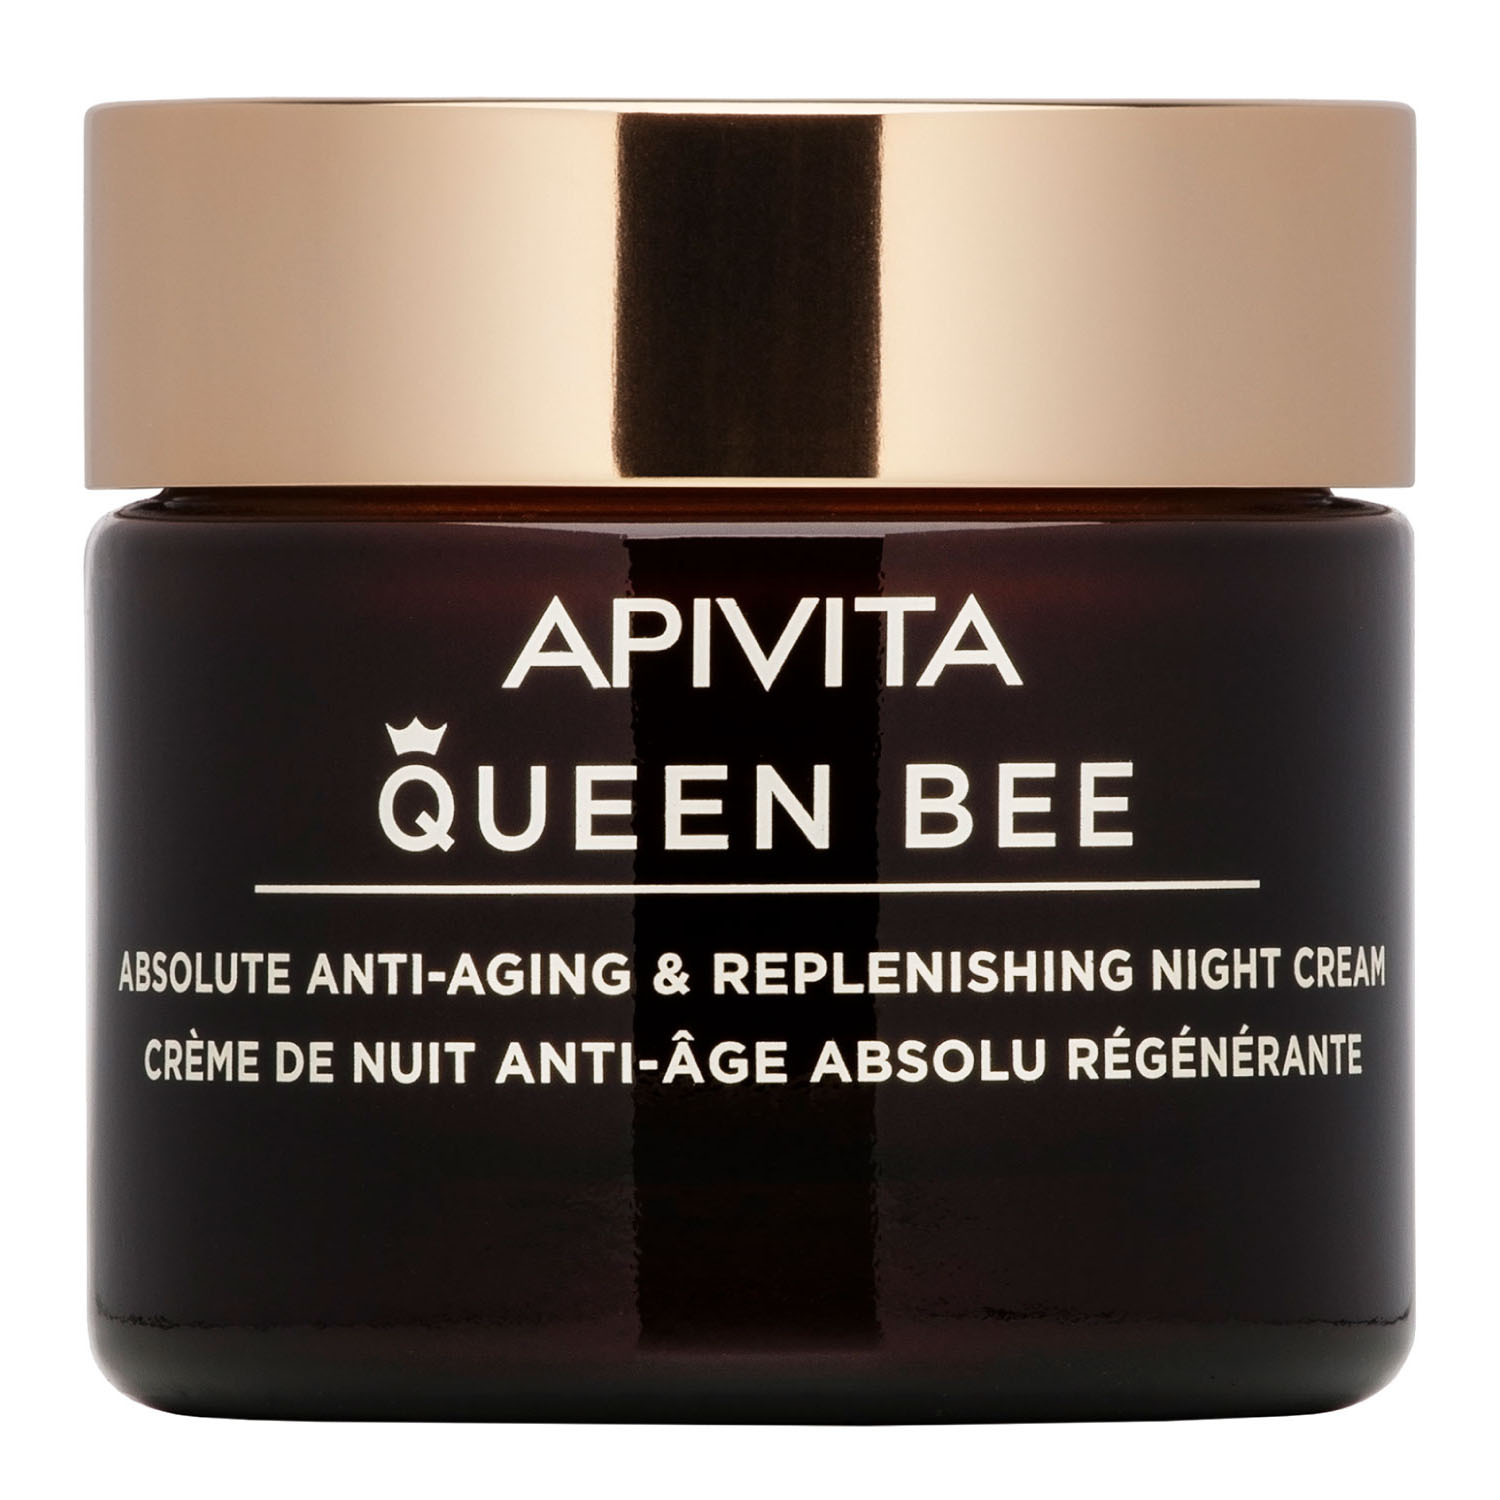 

Apivita Комплексный восстанавливающий ночной крем, 50 мл (Apivita, Queen Bee), Queen Bee